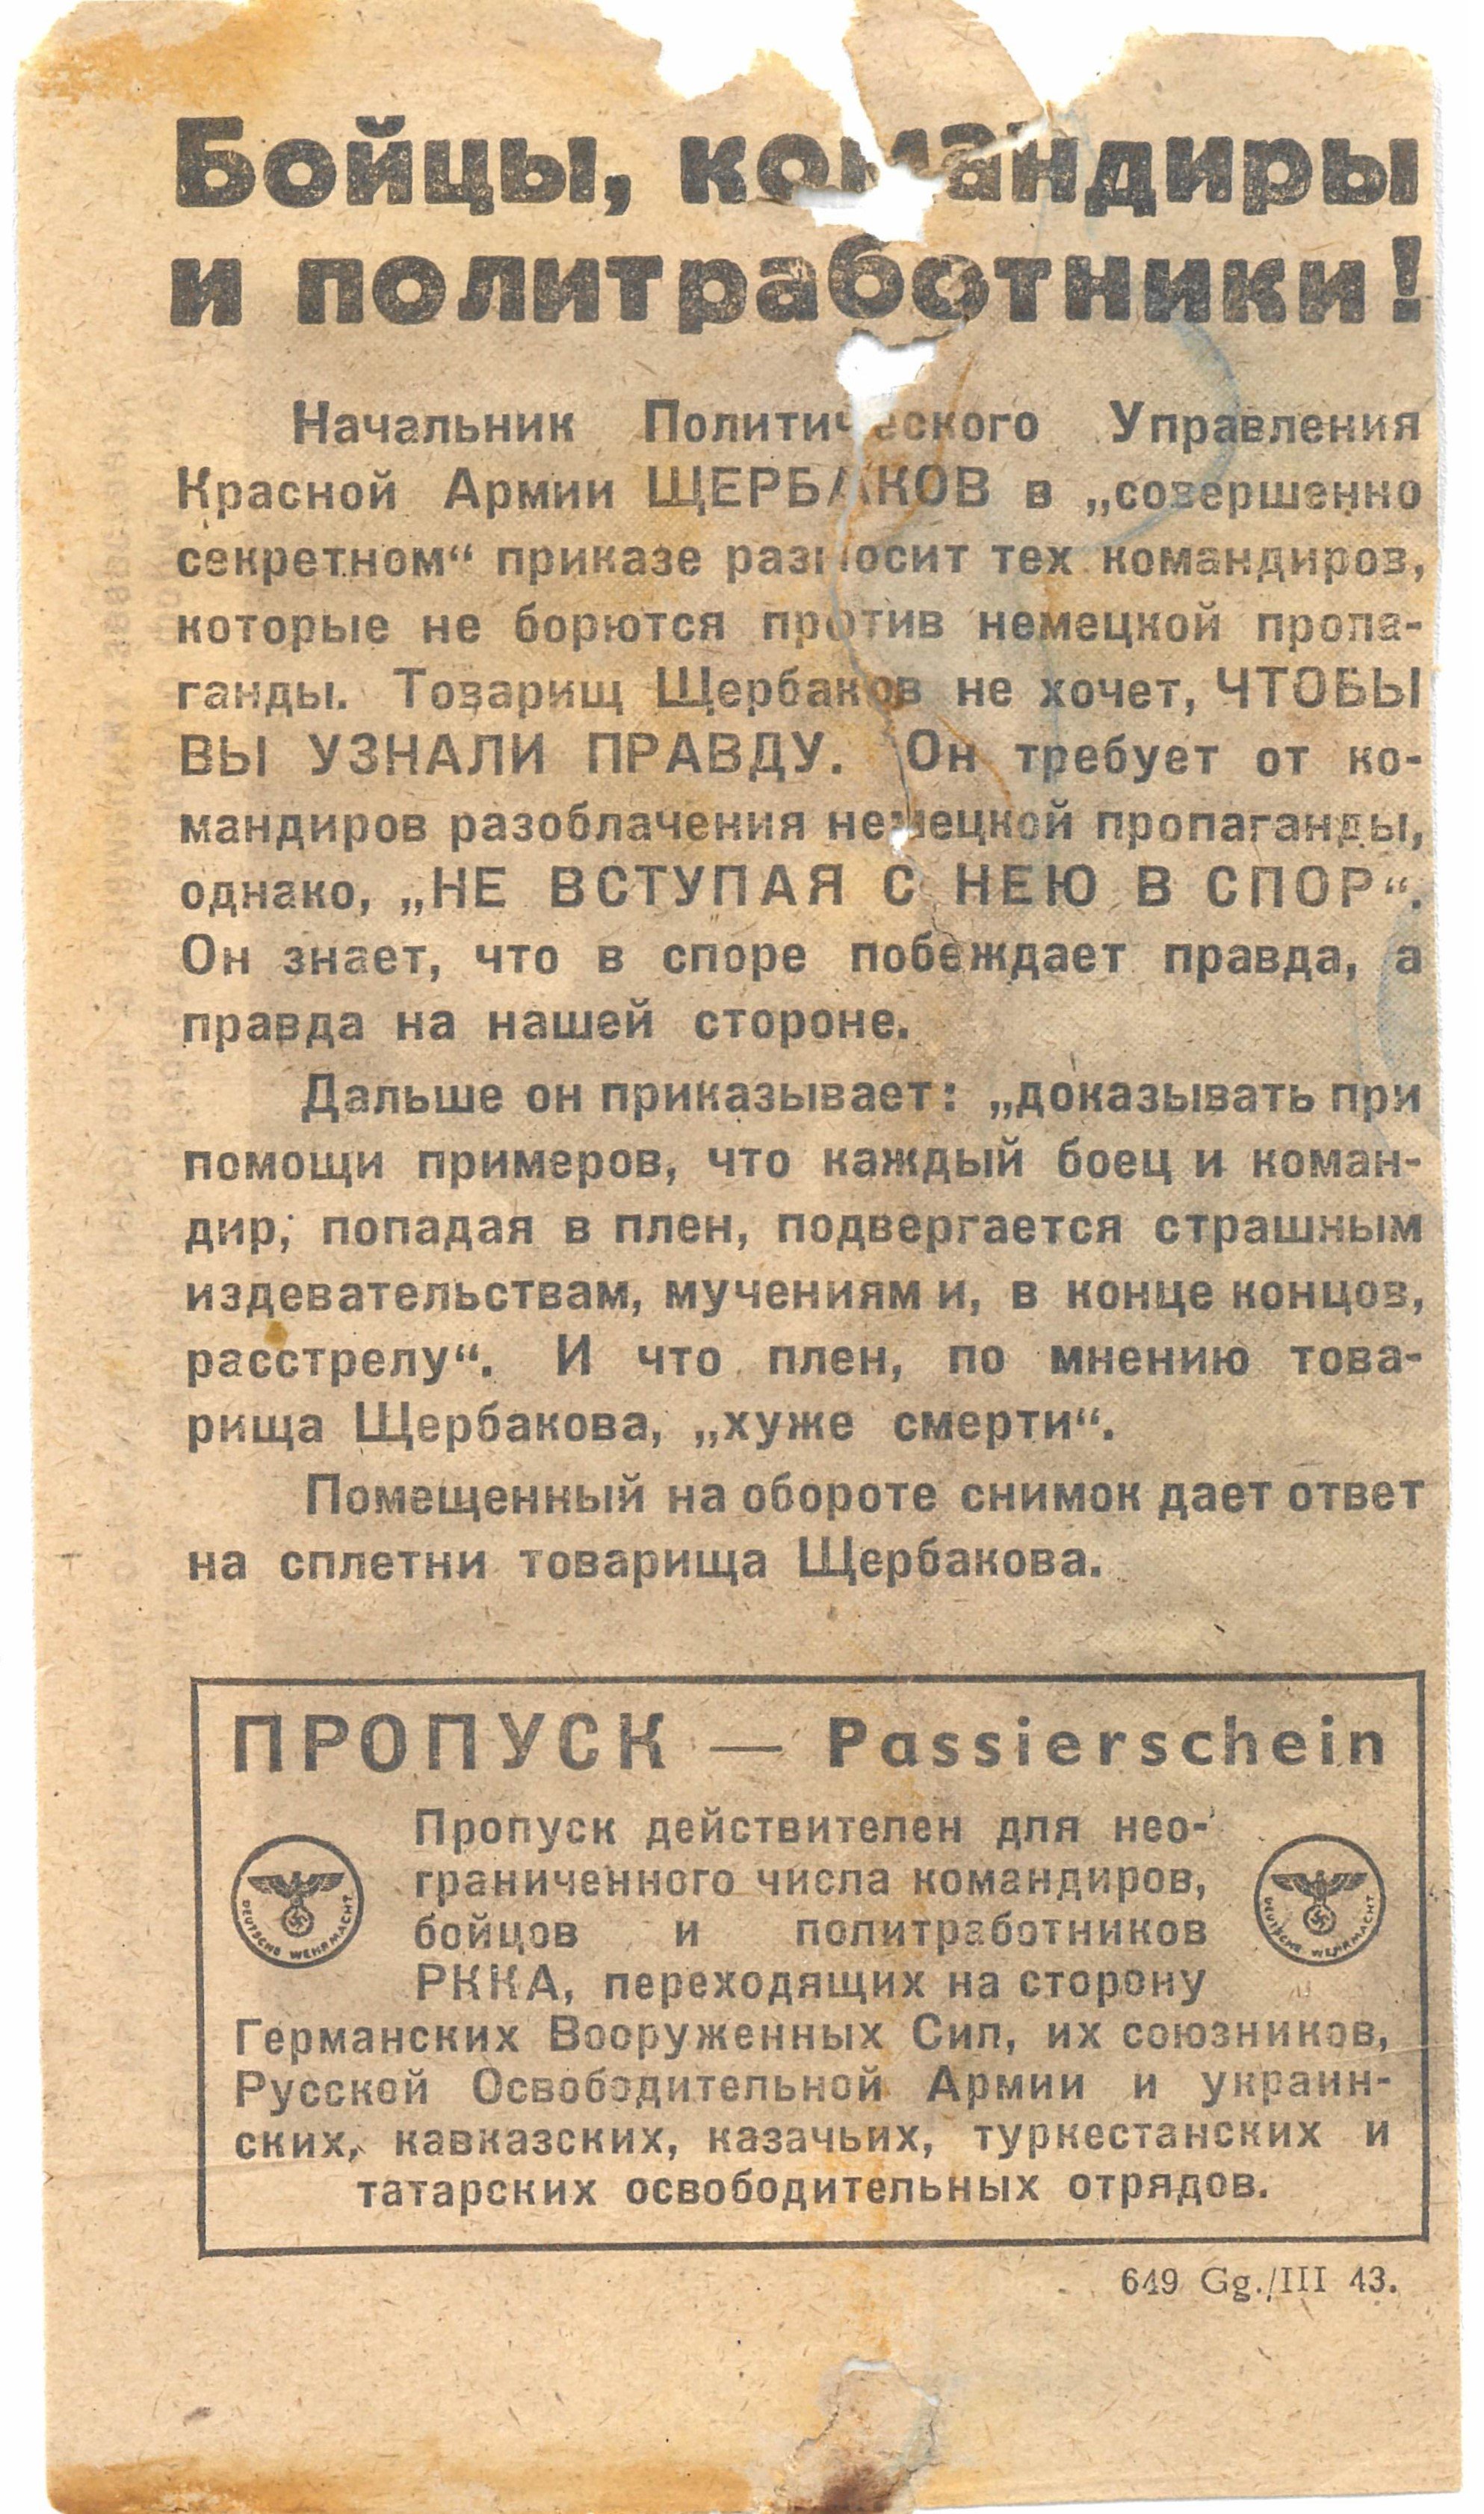 Flugblatt zur Widerlegung sowjetischer Greuellügen über das Leben in deutscher Kriegsgefangenschaft, 1943 (Deutsch-Russisches Museum Berlin-Karlshorst CC BY-NC-SA)